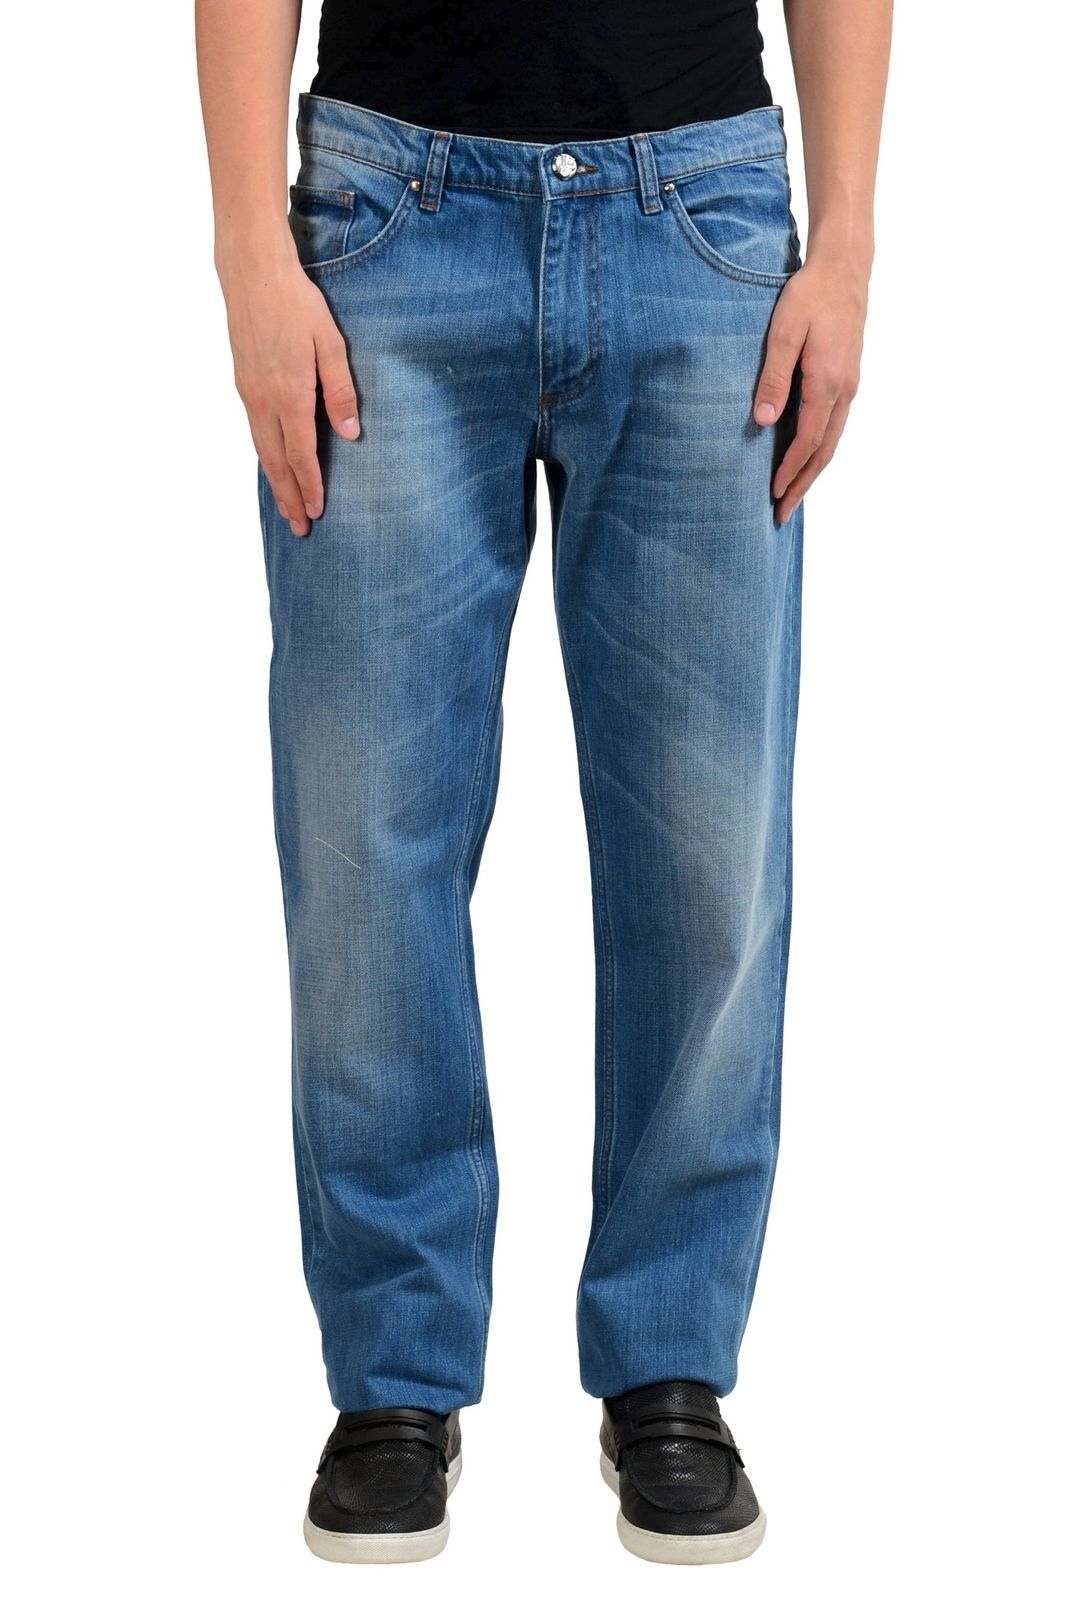 Versace Jeans Men's Blue Regular Fit Classic Jeans Size 36 38 42 | eBay